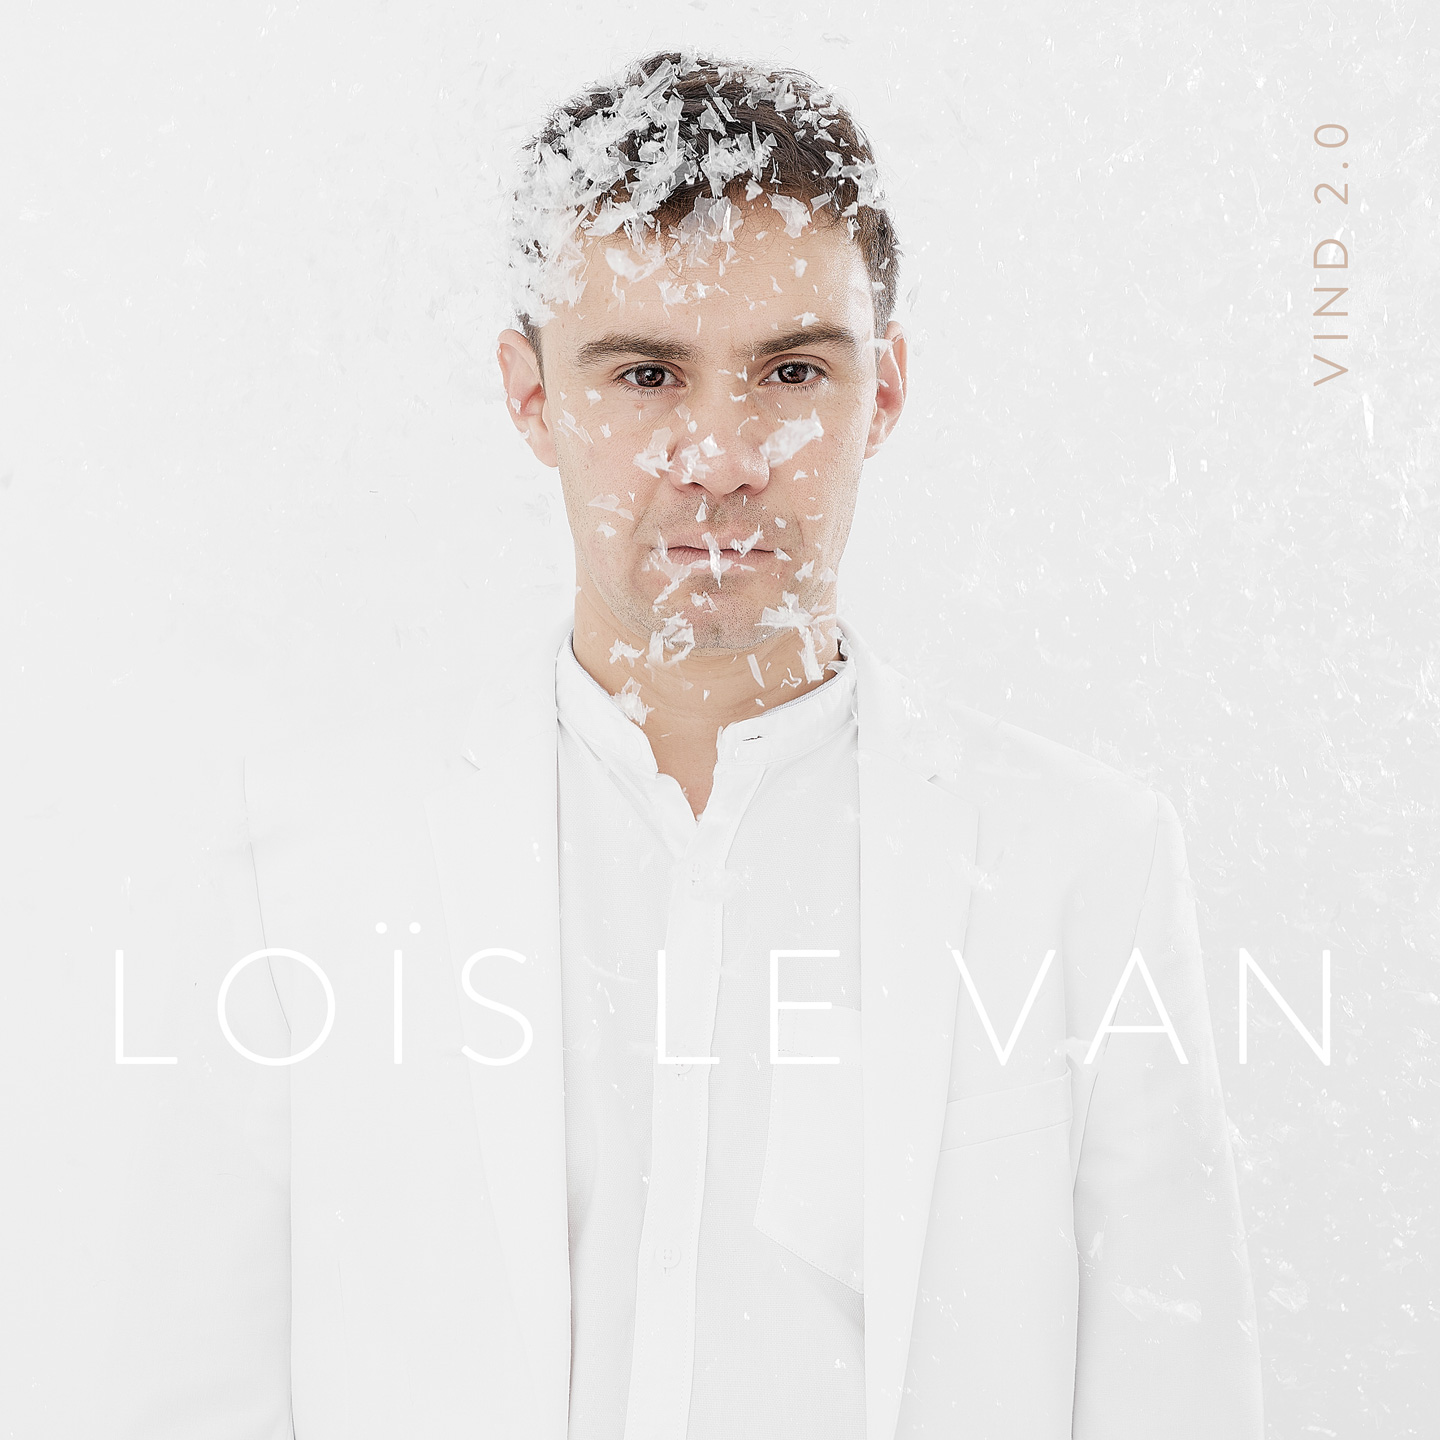 LOÏS LE VAN - Vind 2.0 cover 